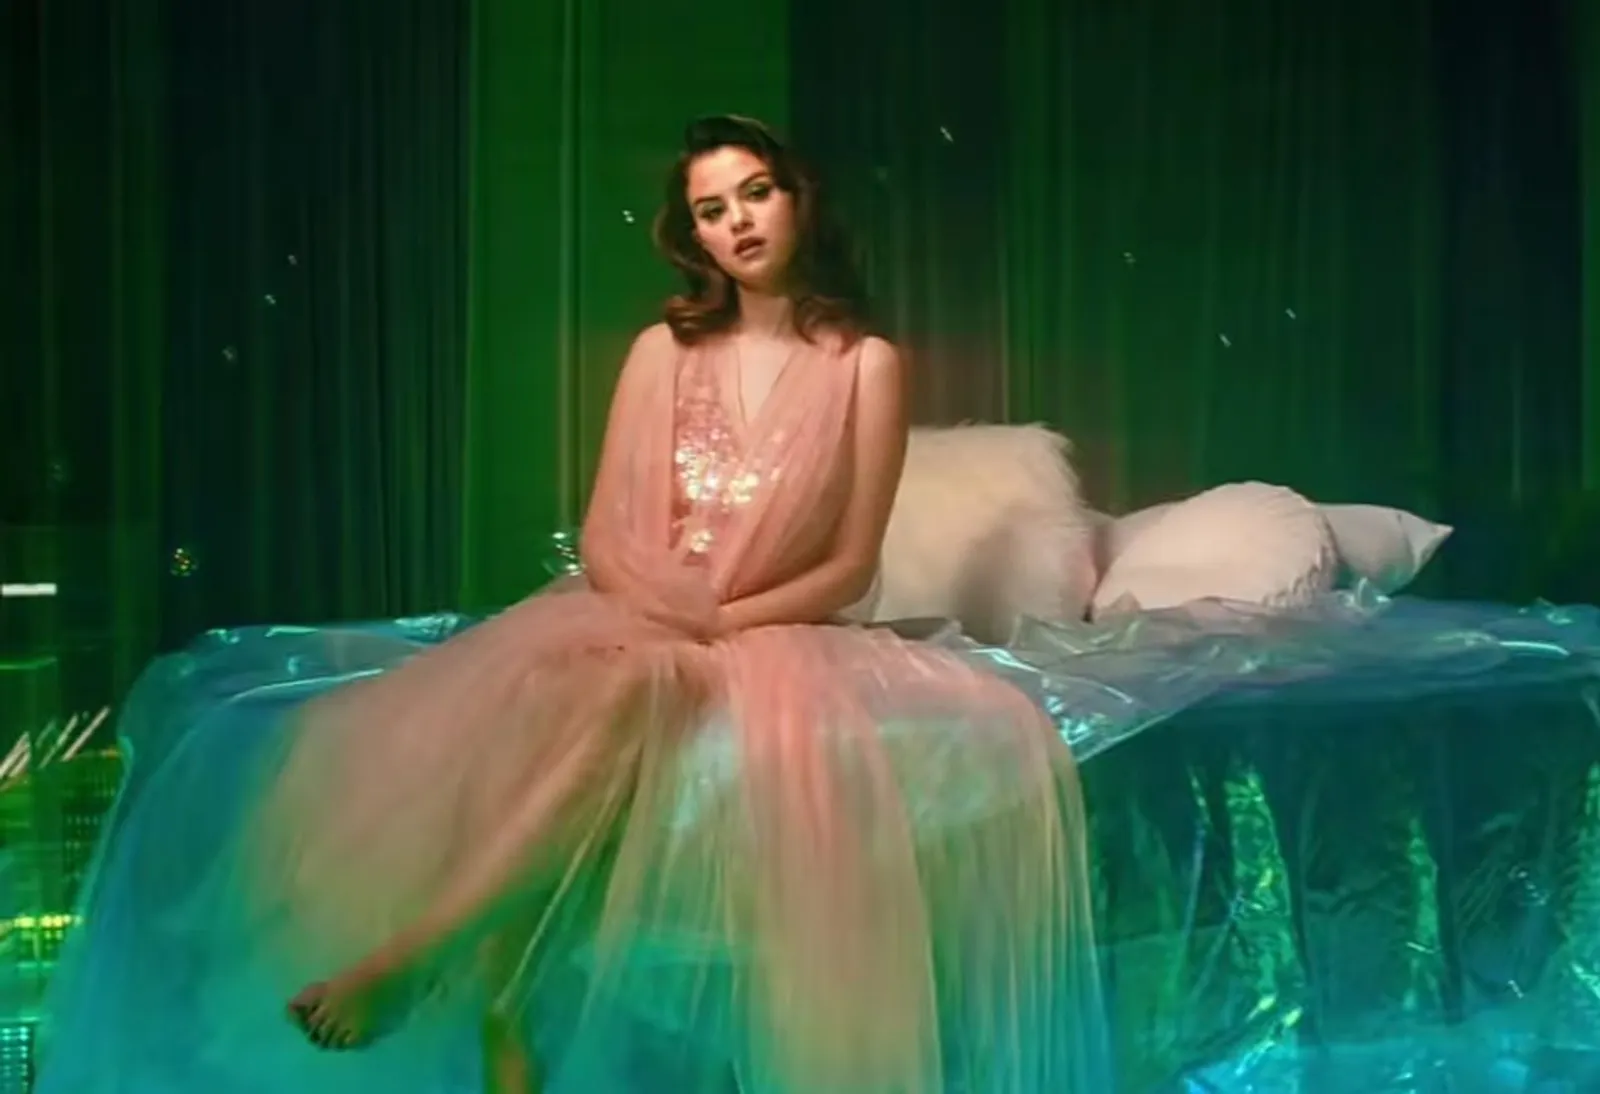 Paling Emosional, Ini 5 Fakta Album Baru Baru Selena Gomez, Rare